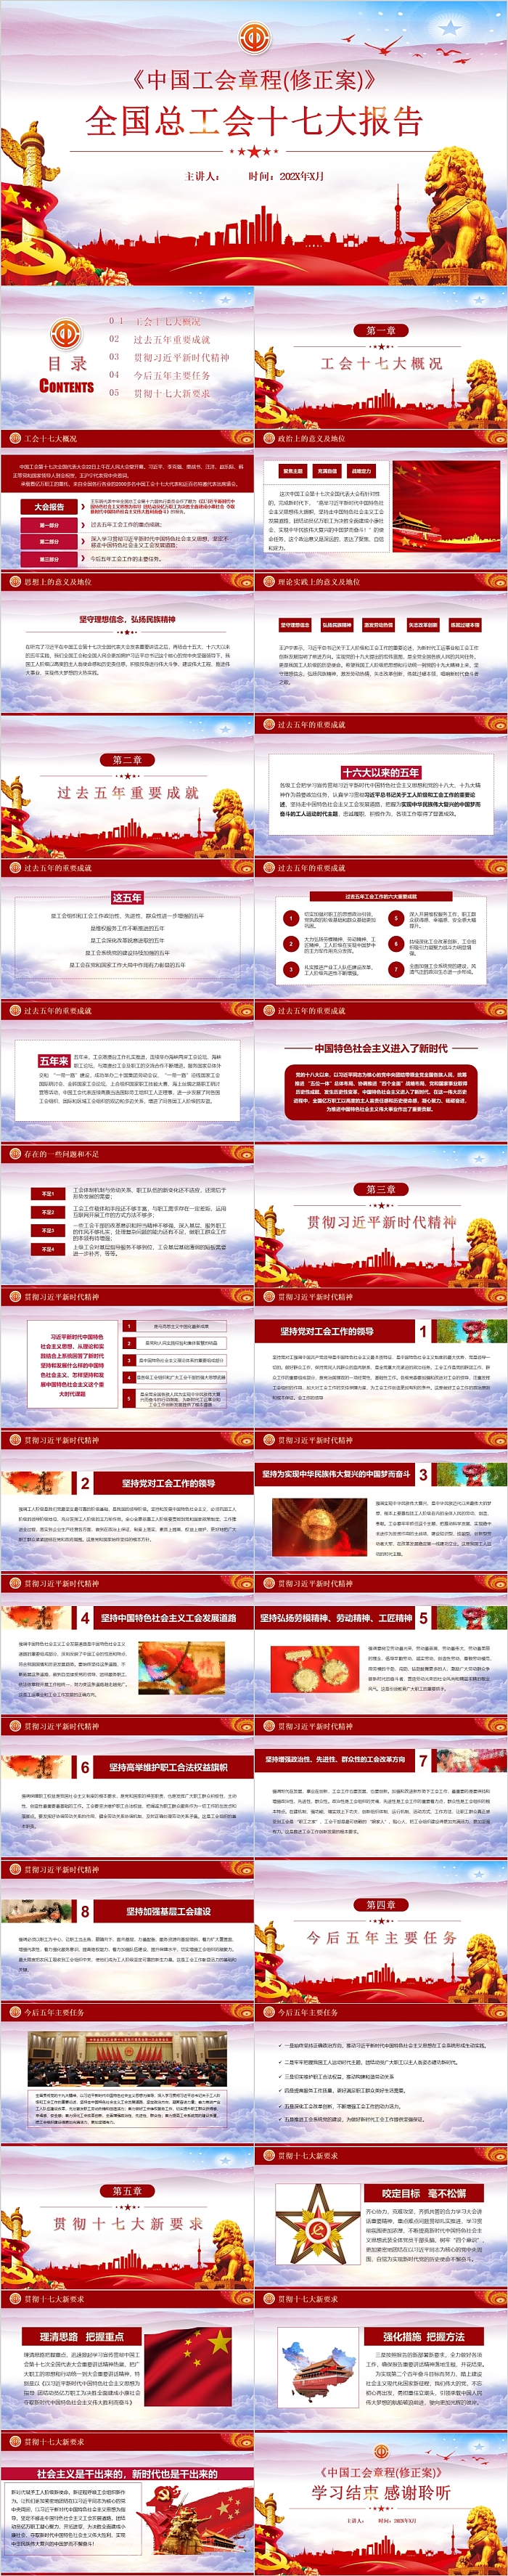 中国工会章程(修正案)全国总工会十七大报告